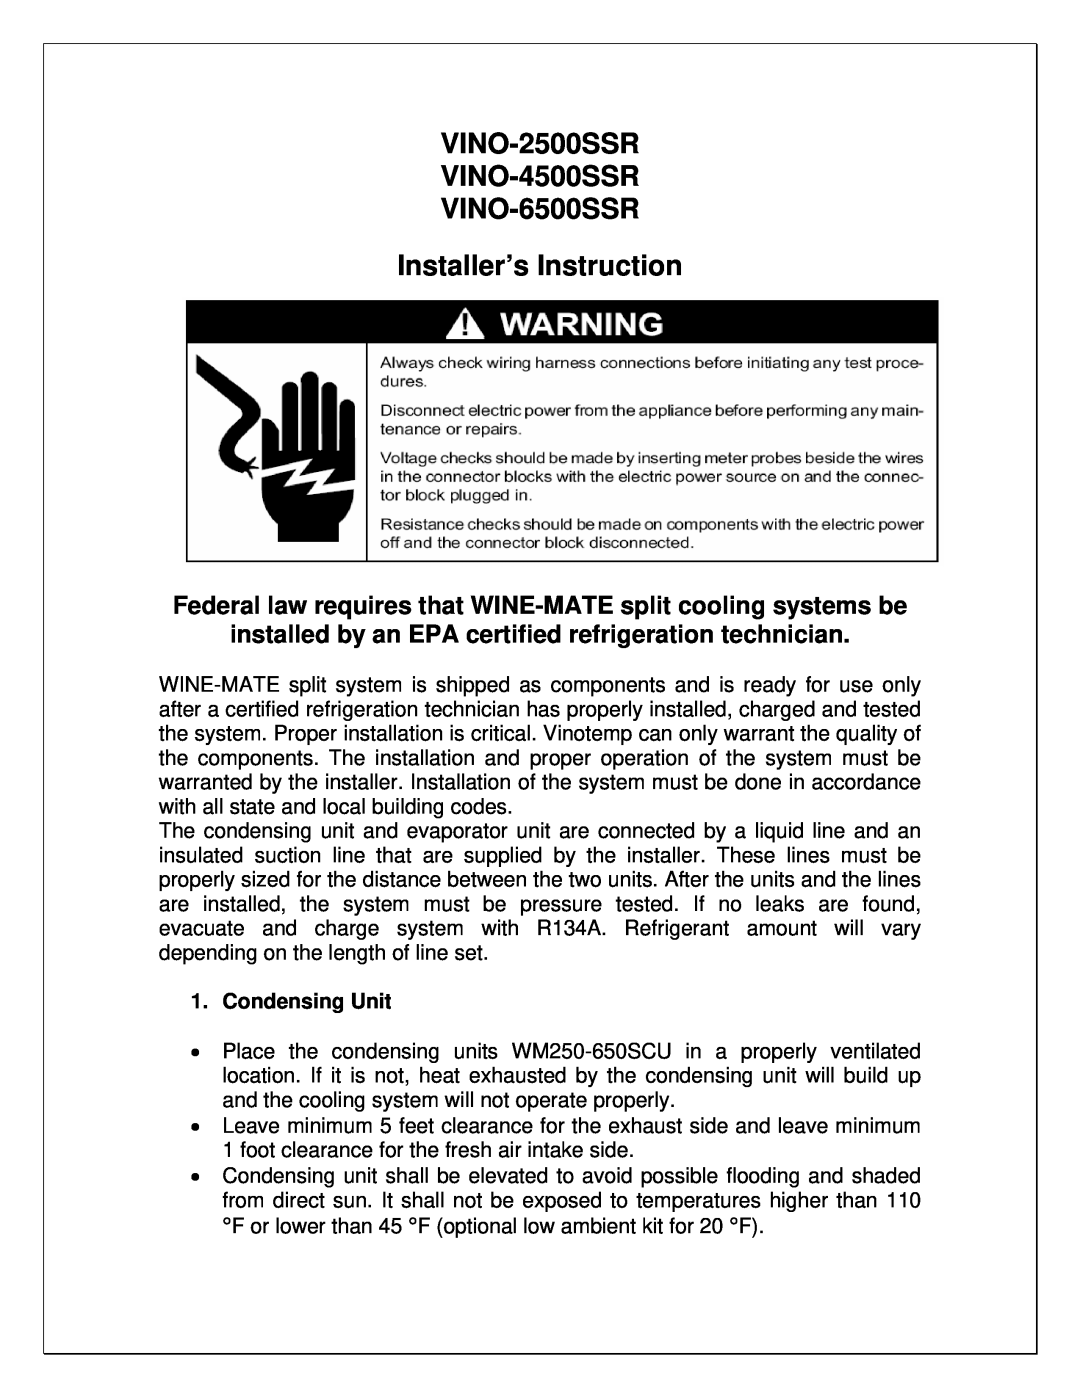 Vinotemp manual VINO-2500SSR VINO-4500SSR VINO-6500SSR, Installer’s Instruction, Condensing Unit 